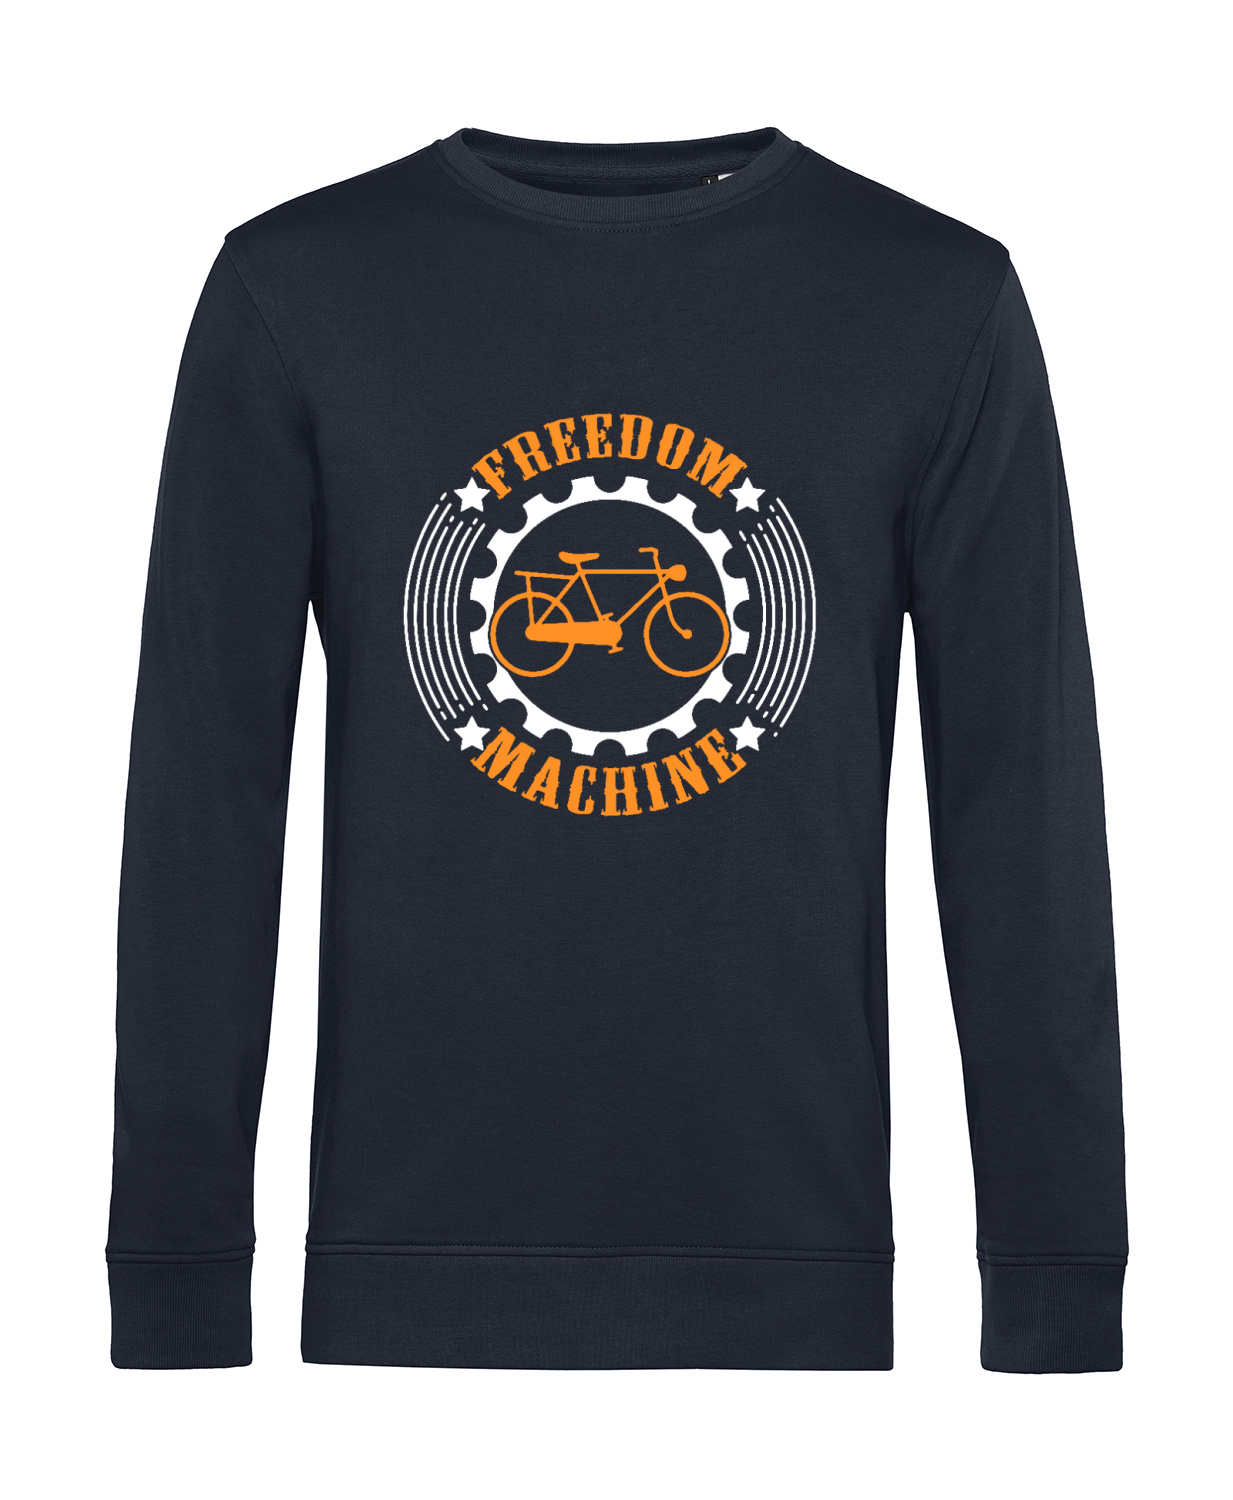 Nachhaltiges Sweatshirt Herren Fahrrad Freedom Machine